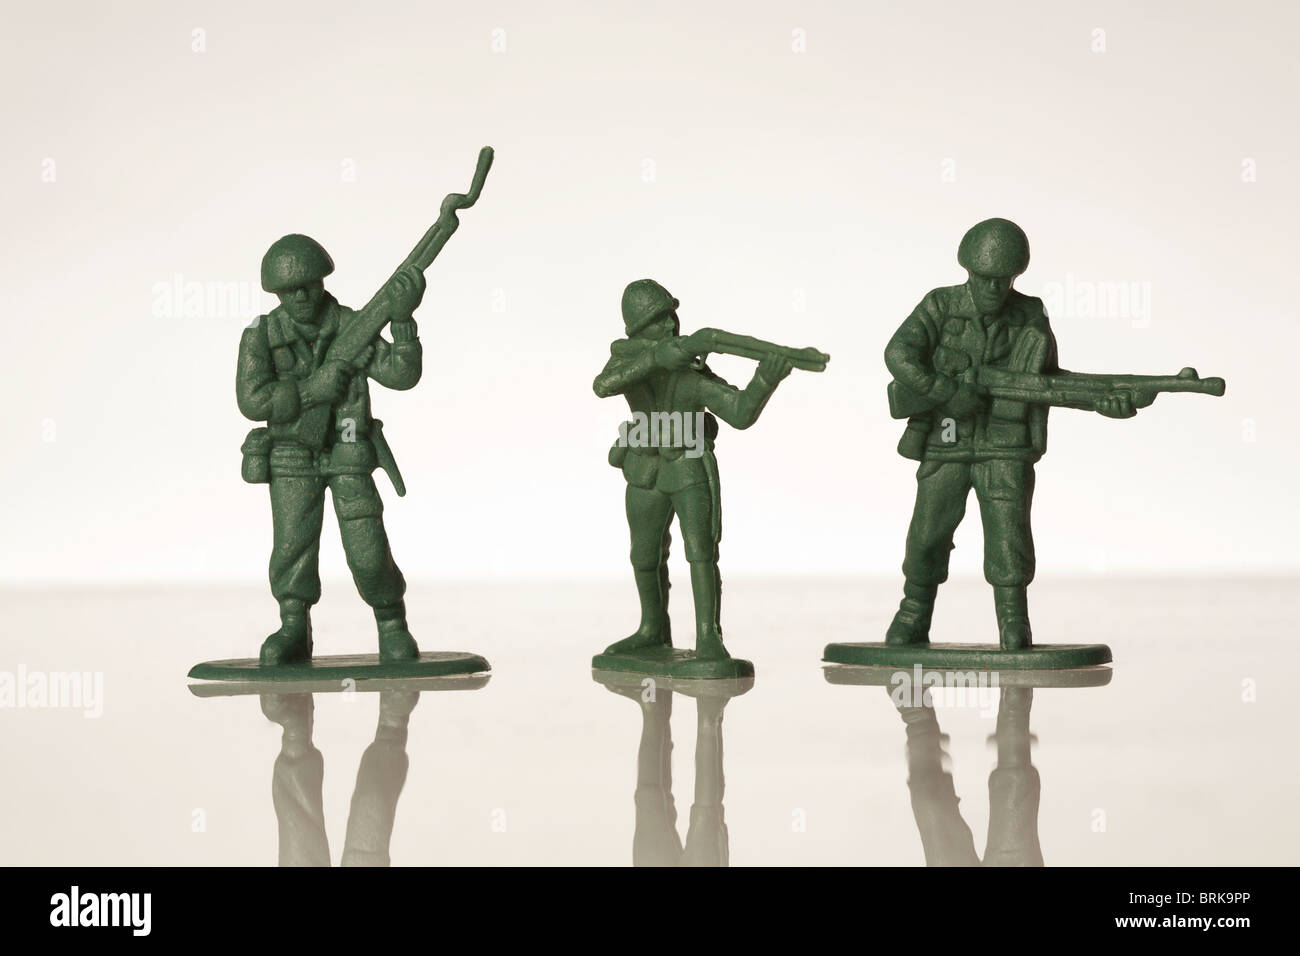 Soldados De Juguete - Plástico Verde Imagen de archivo - Imagen de figuras,  primer: 88536675